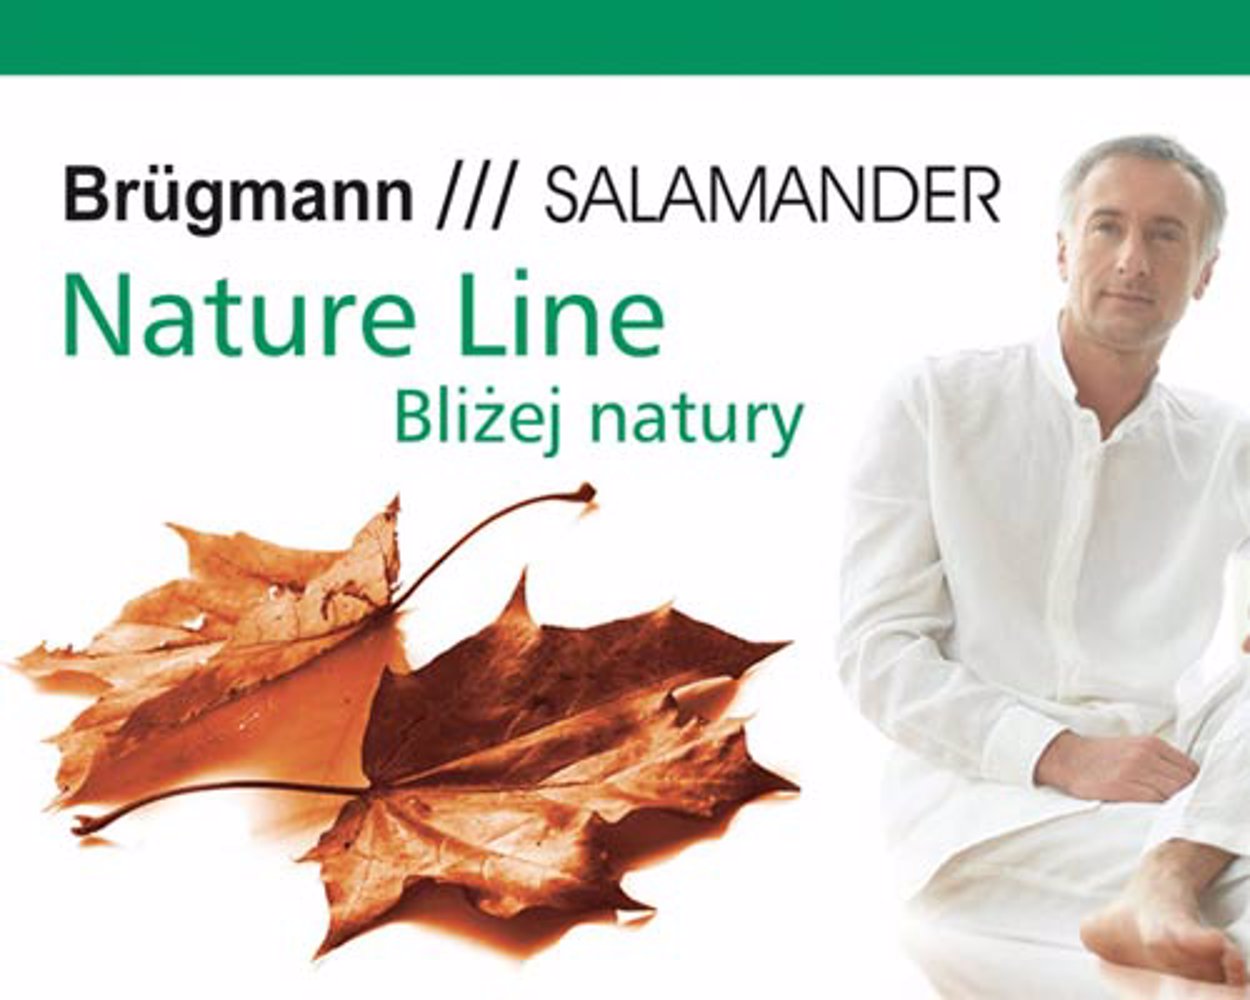 Brügmann /// SALAMANDER Nature Line – bliżej natury